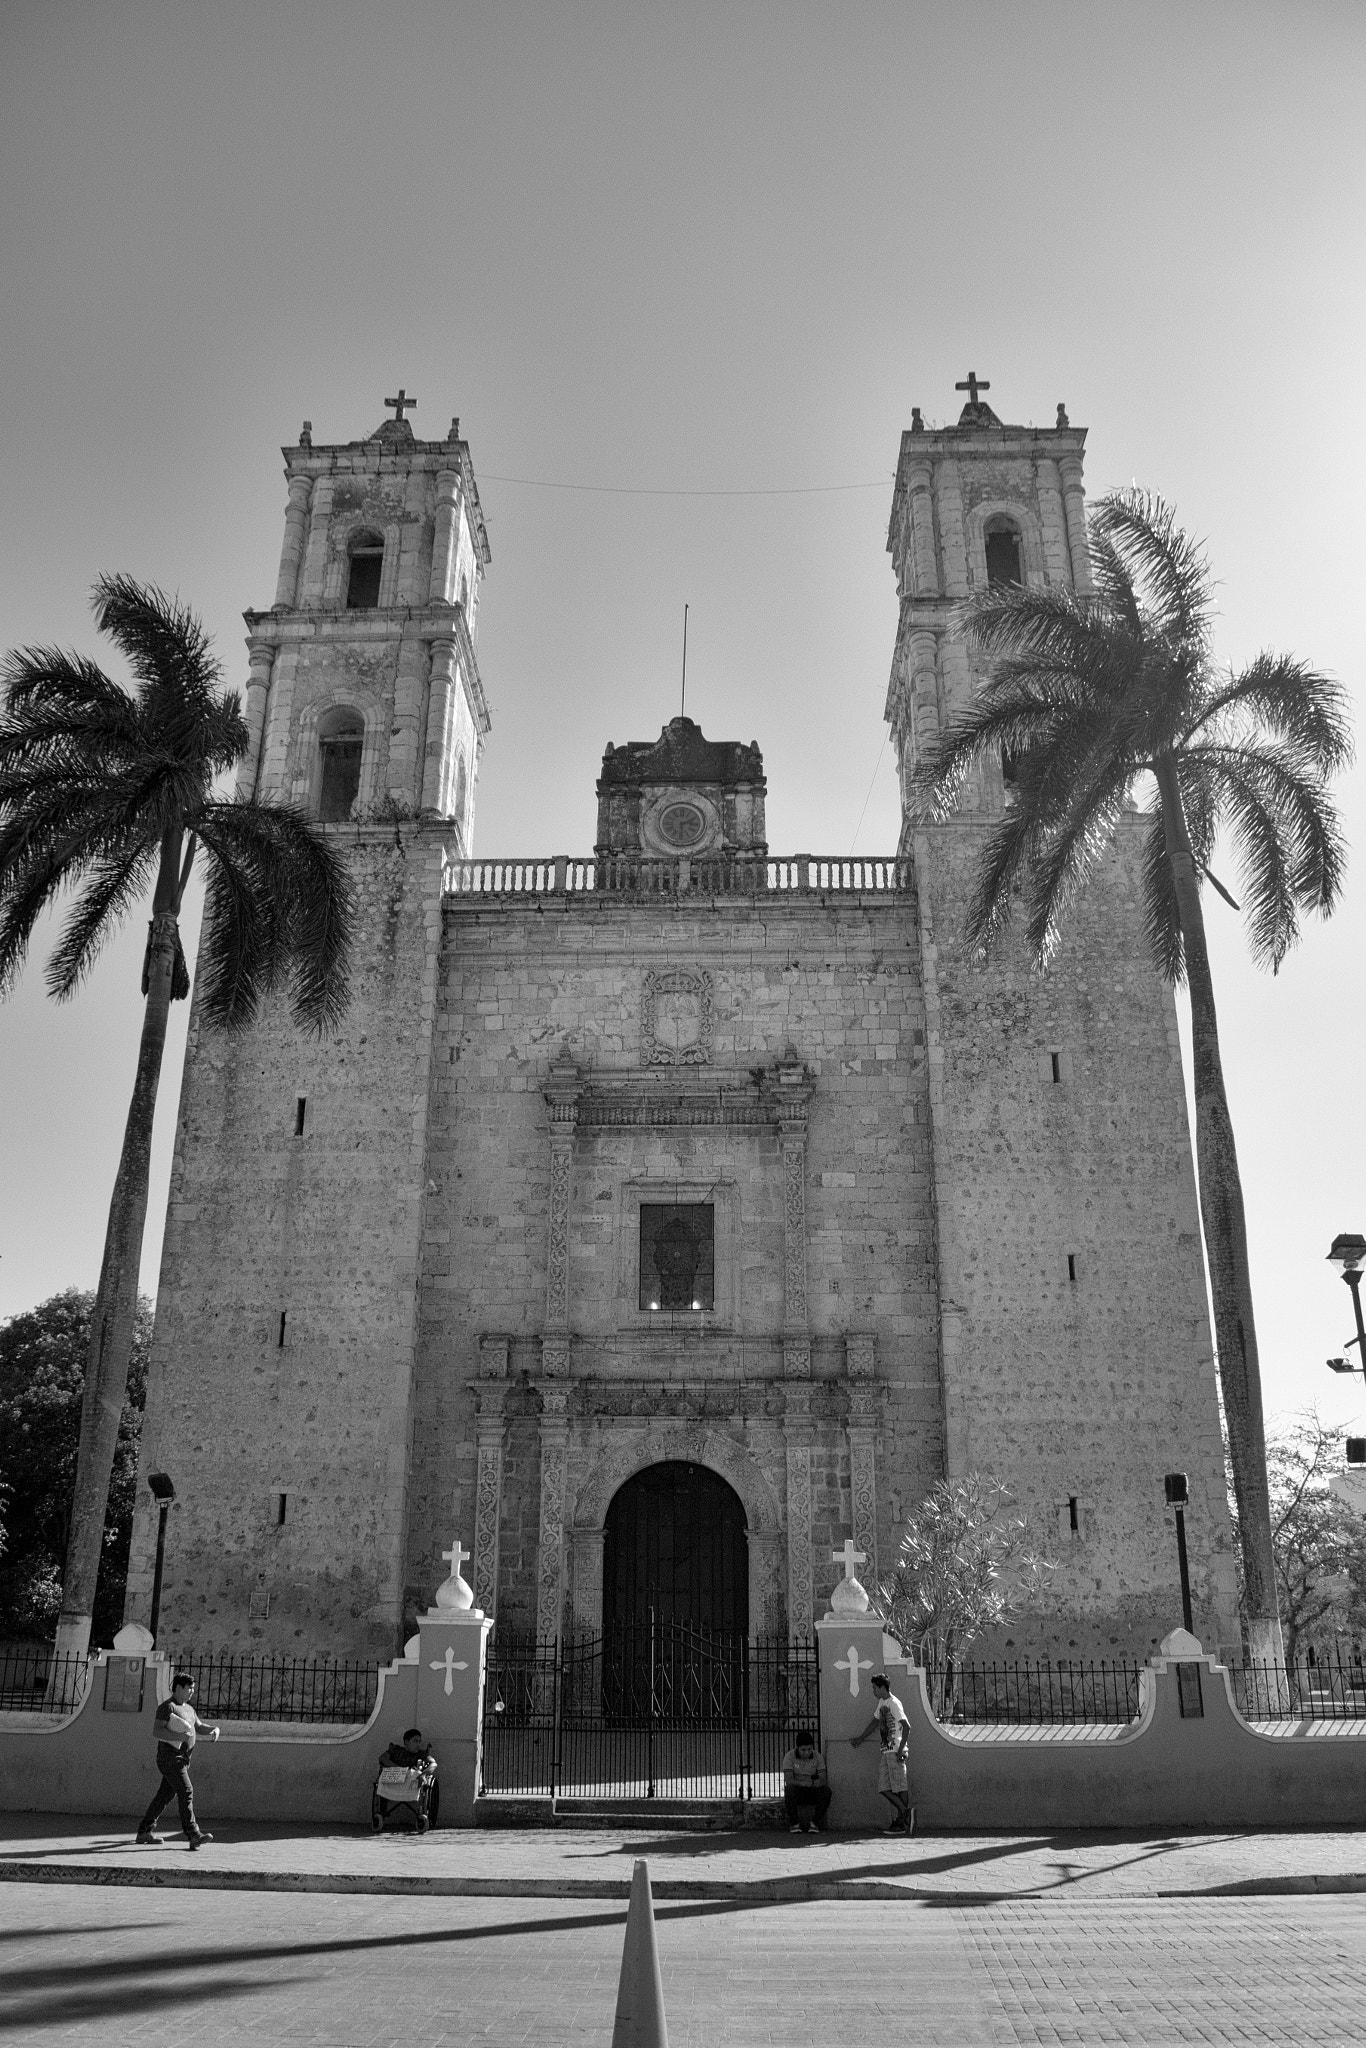 Nikon 1 J5 sample photo. Church of san servacio, yucatán, méxico. photography